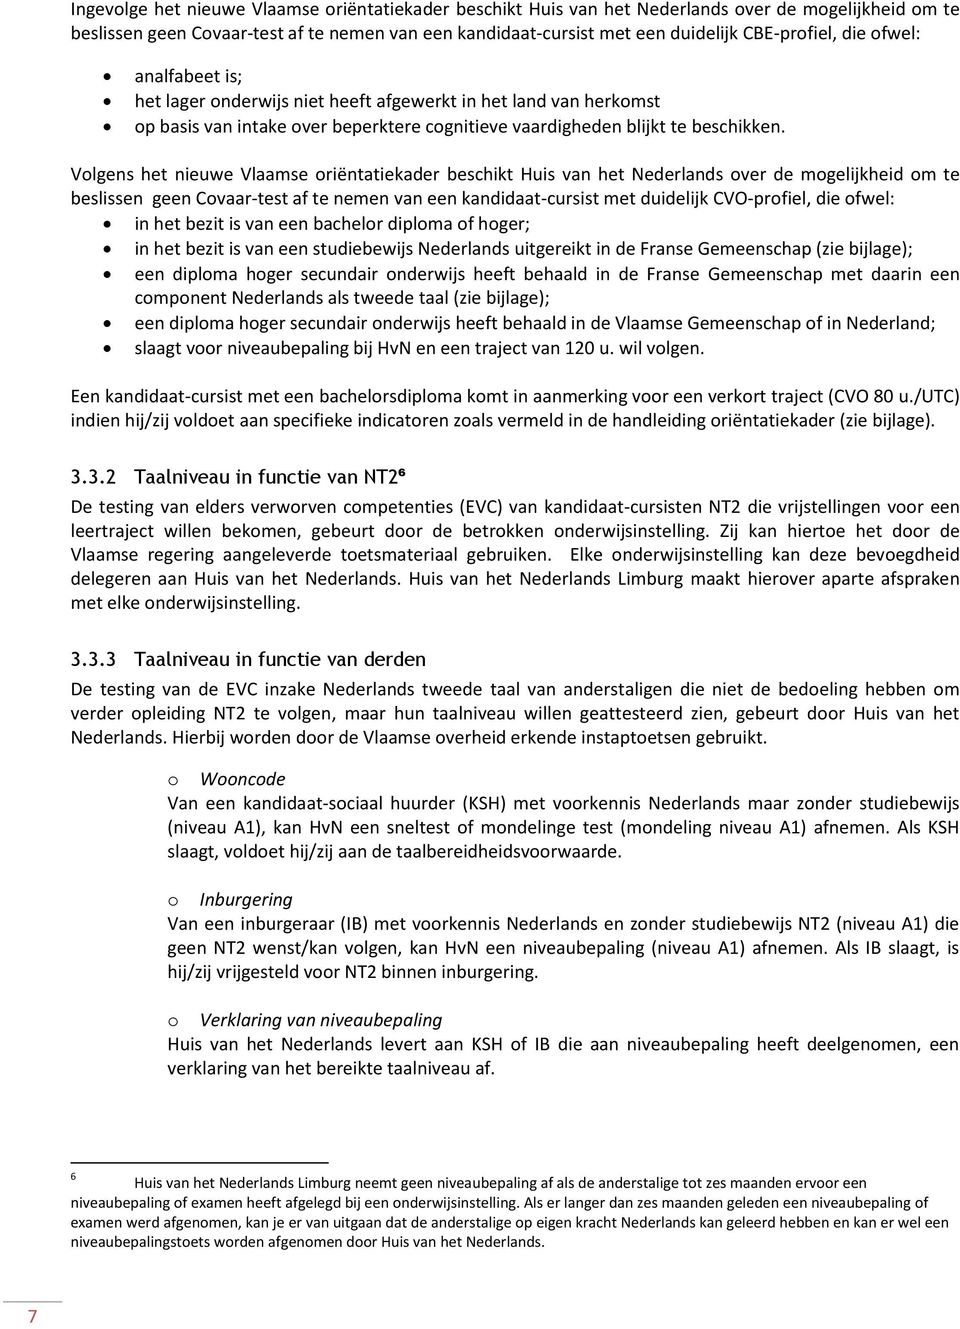 Vlgens het nieuwe Vlaamse riëntatiekader beschikt Huis van het Nederlands ver de mgelijkheid m te beslissen geen Cvaar-test af te nemen van een kandidaat-cursist met duidelijk CVO-prfiel, die fwel: